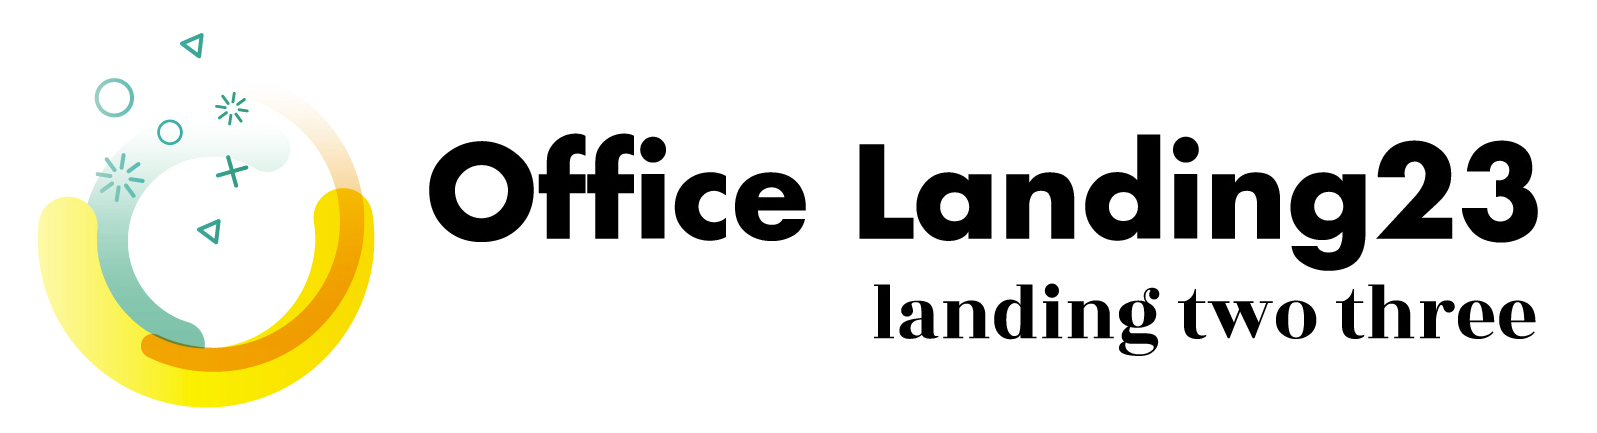 合同会社Office Landing23様のロゴ